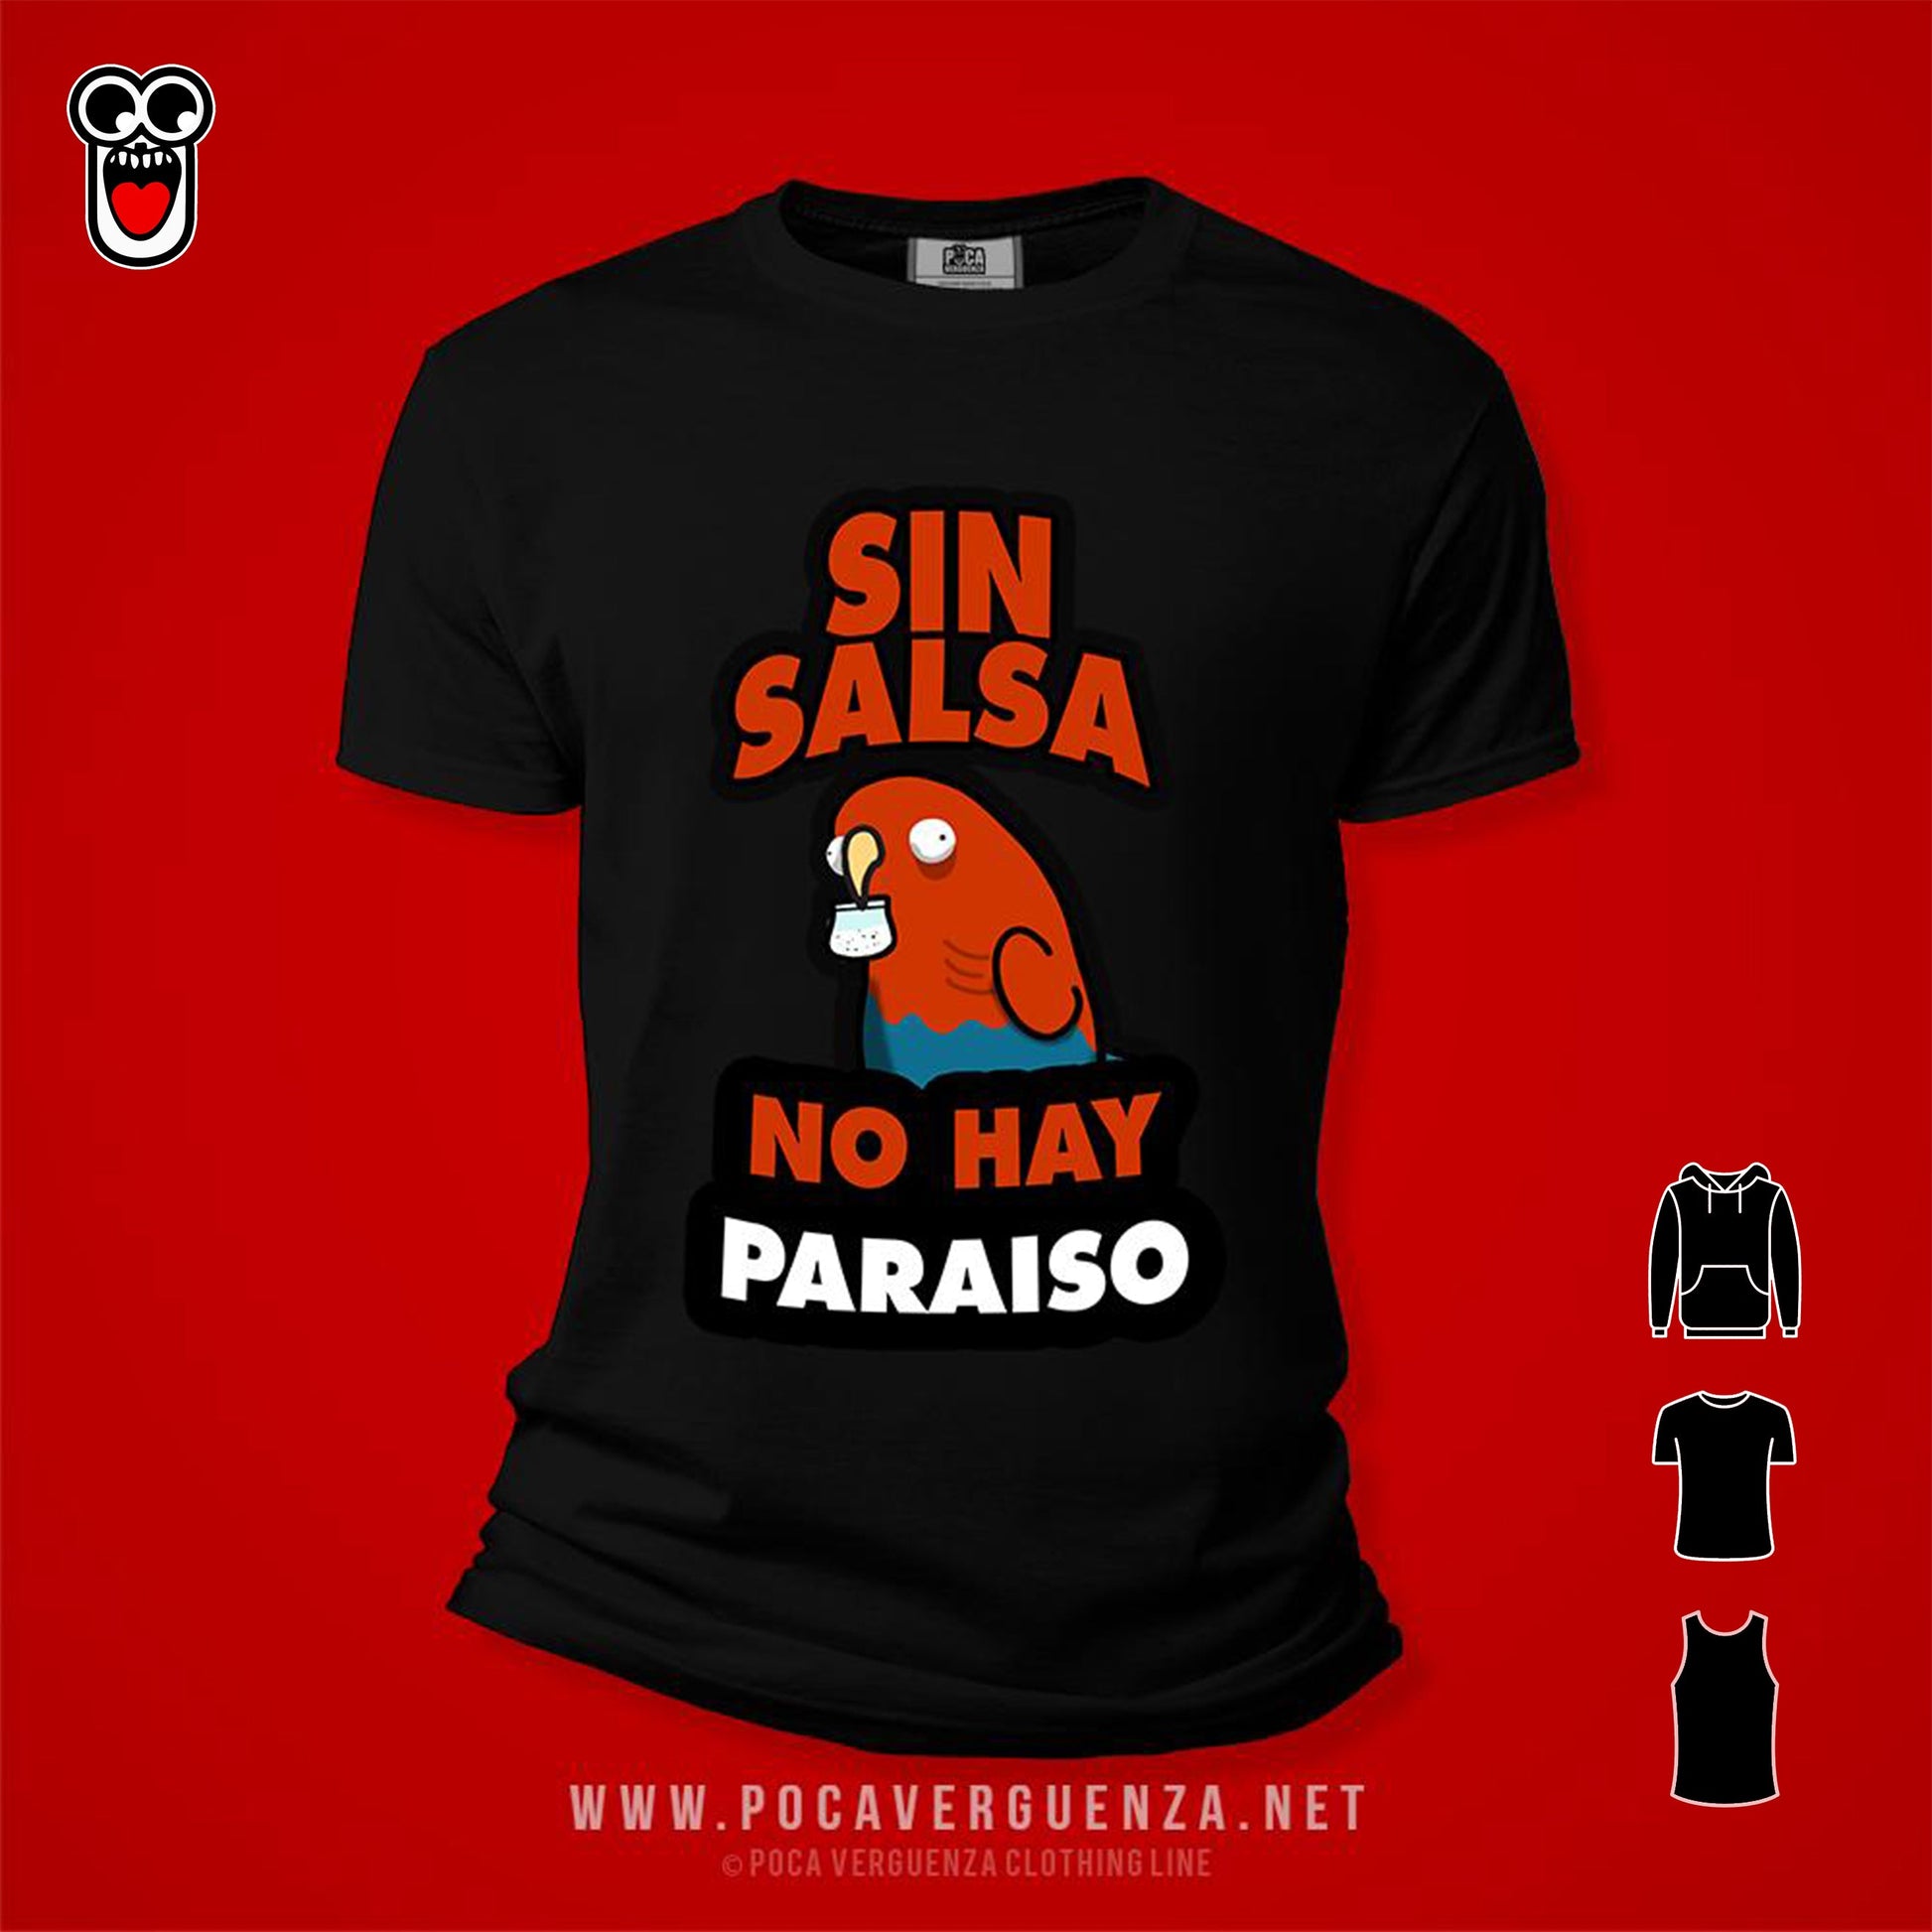 Sin salsa no hay paraiso pocaverguenzapr Camisetas (4574870732890)